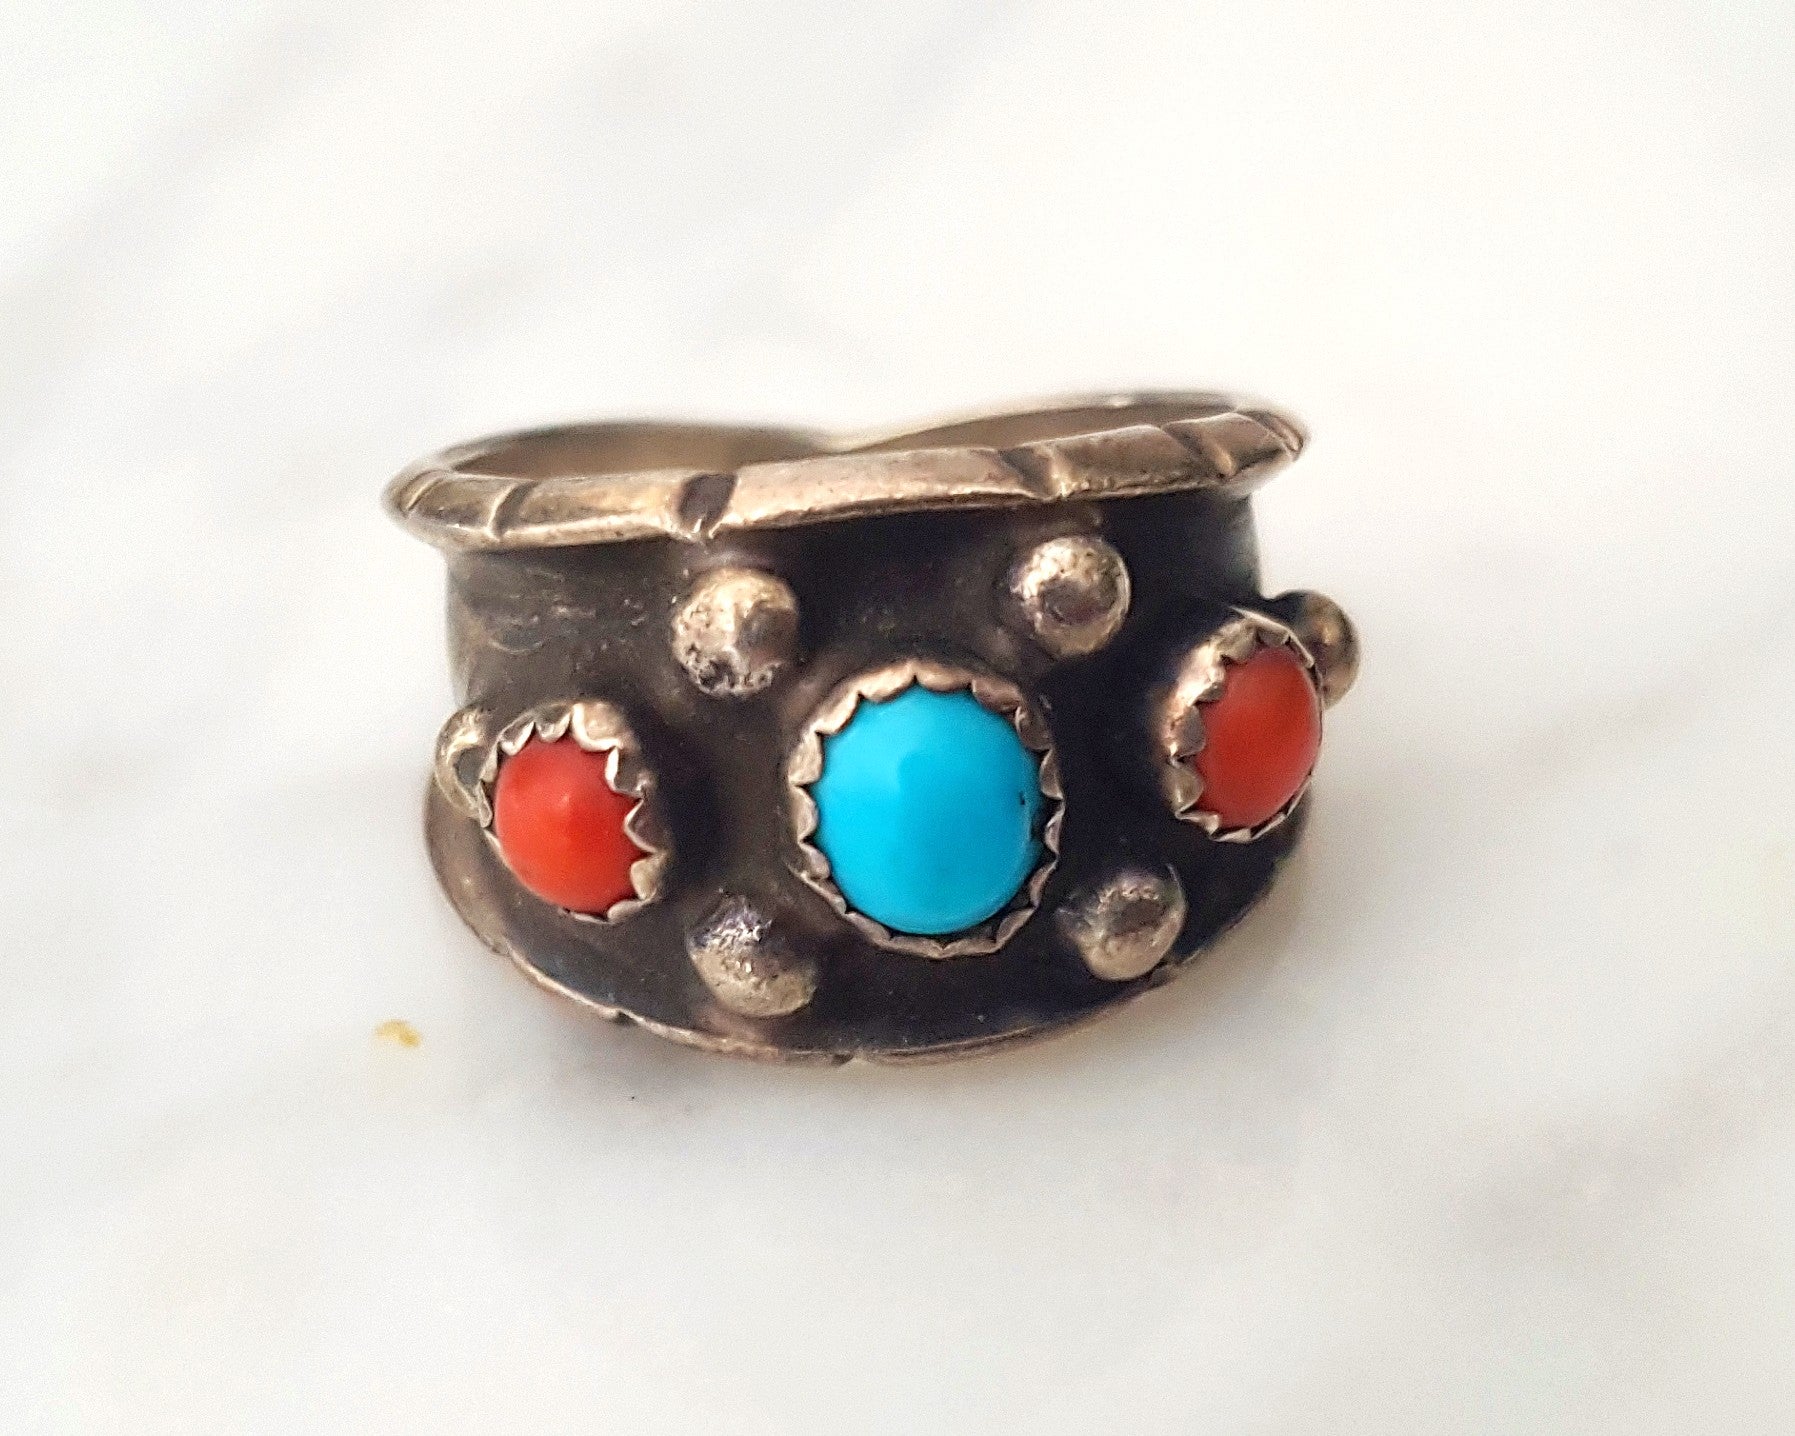 Zuni Turquoise Band Ring - Size 7.25 - Signed Milton Lasiloo